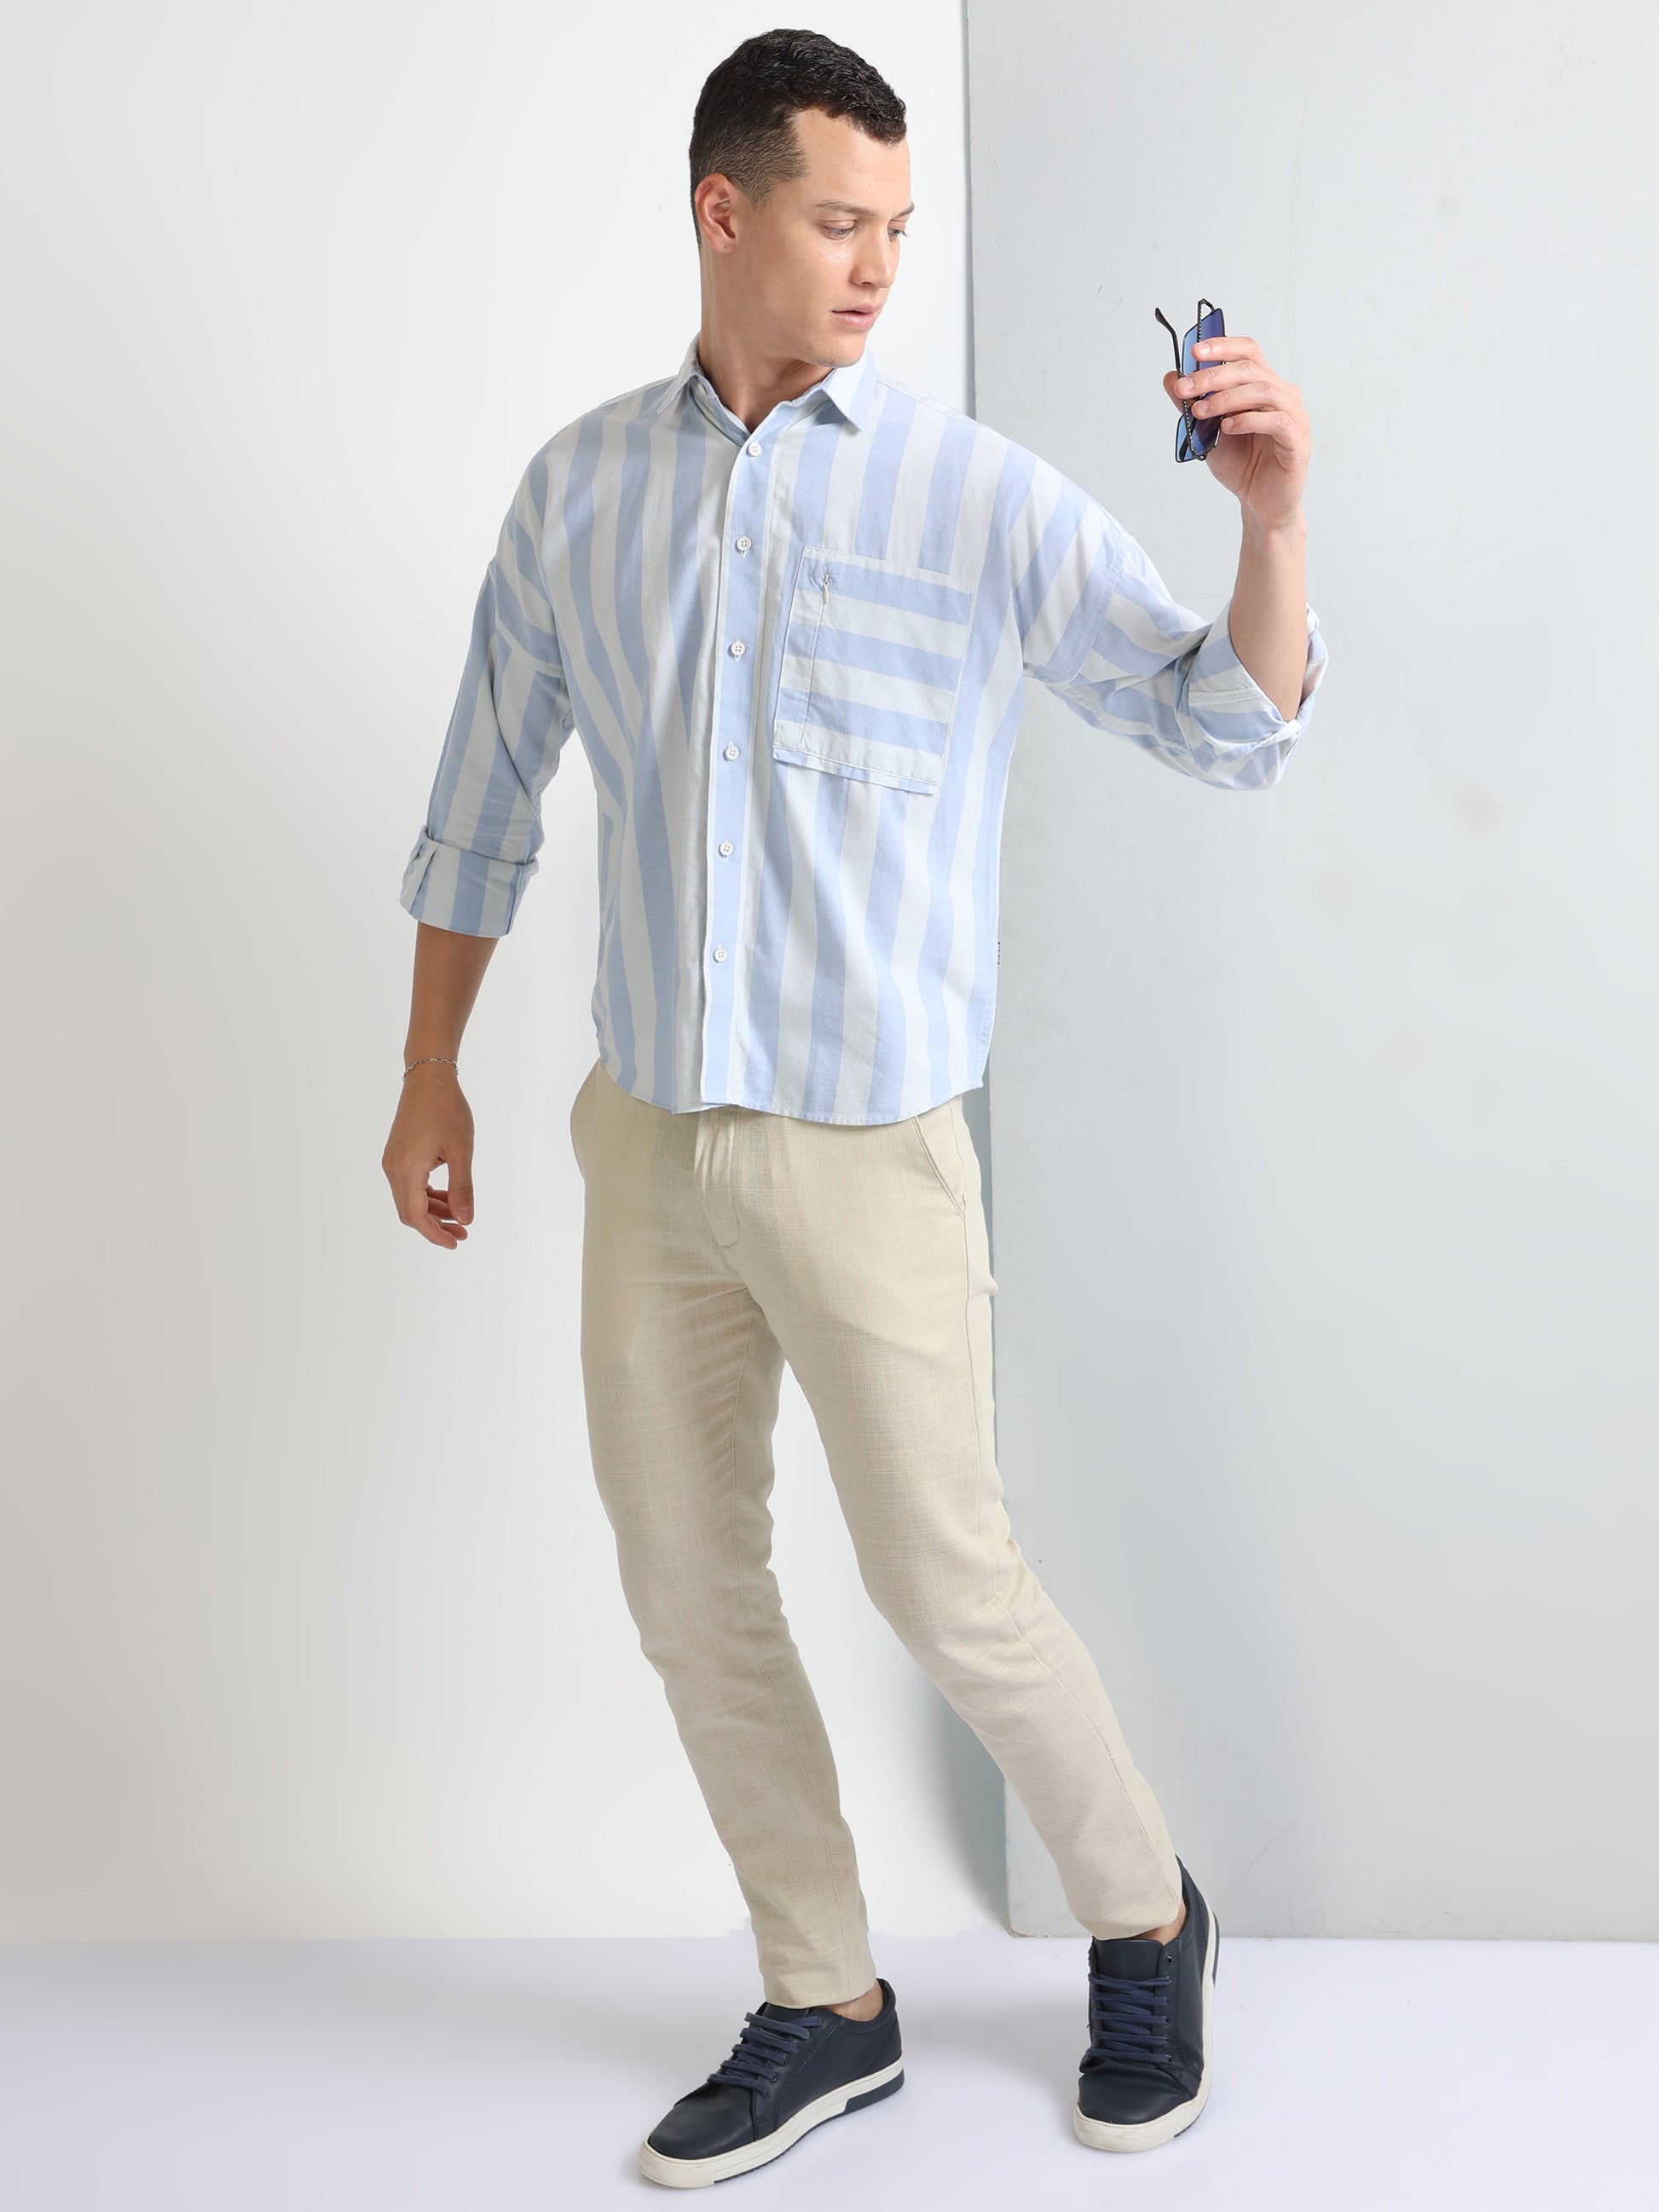 Buy Big Striped Stylish Pocket Shirt Online.